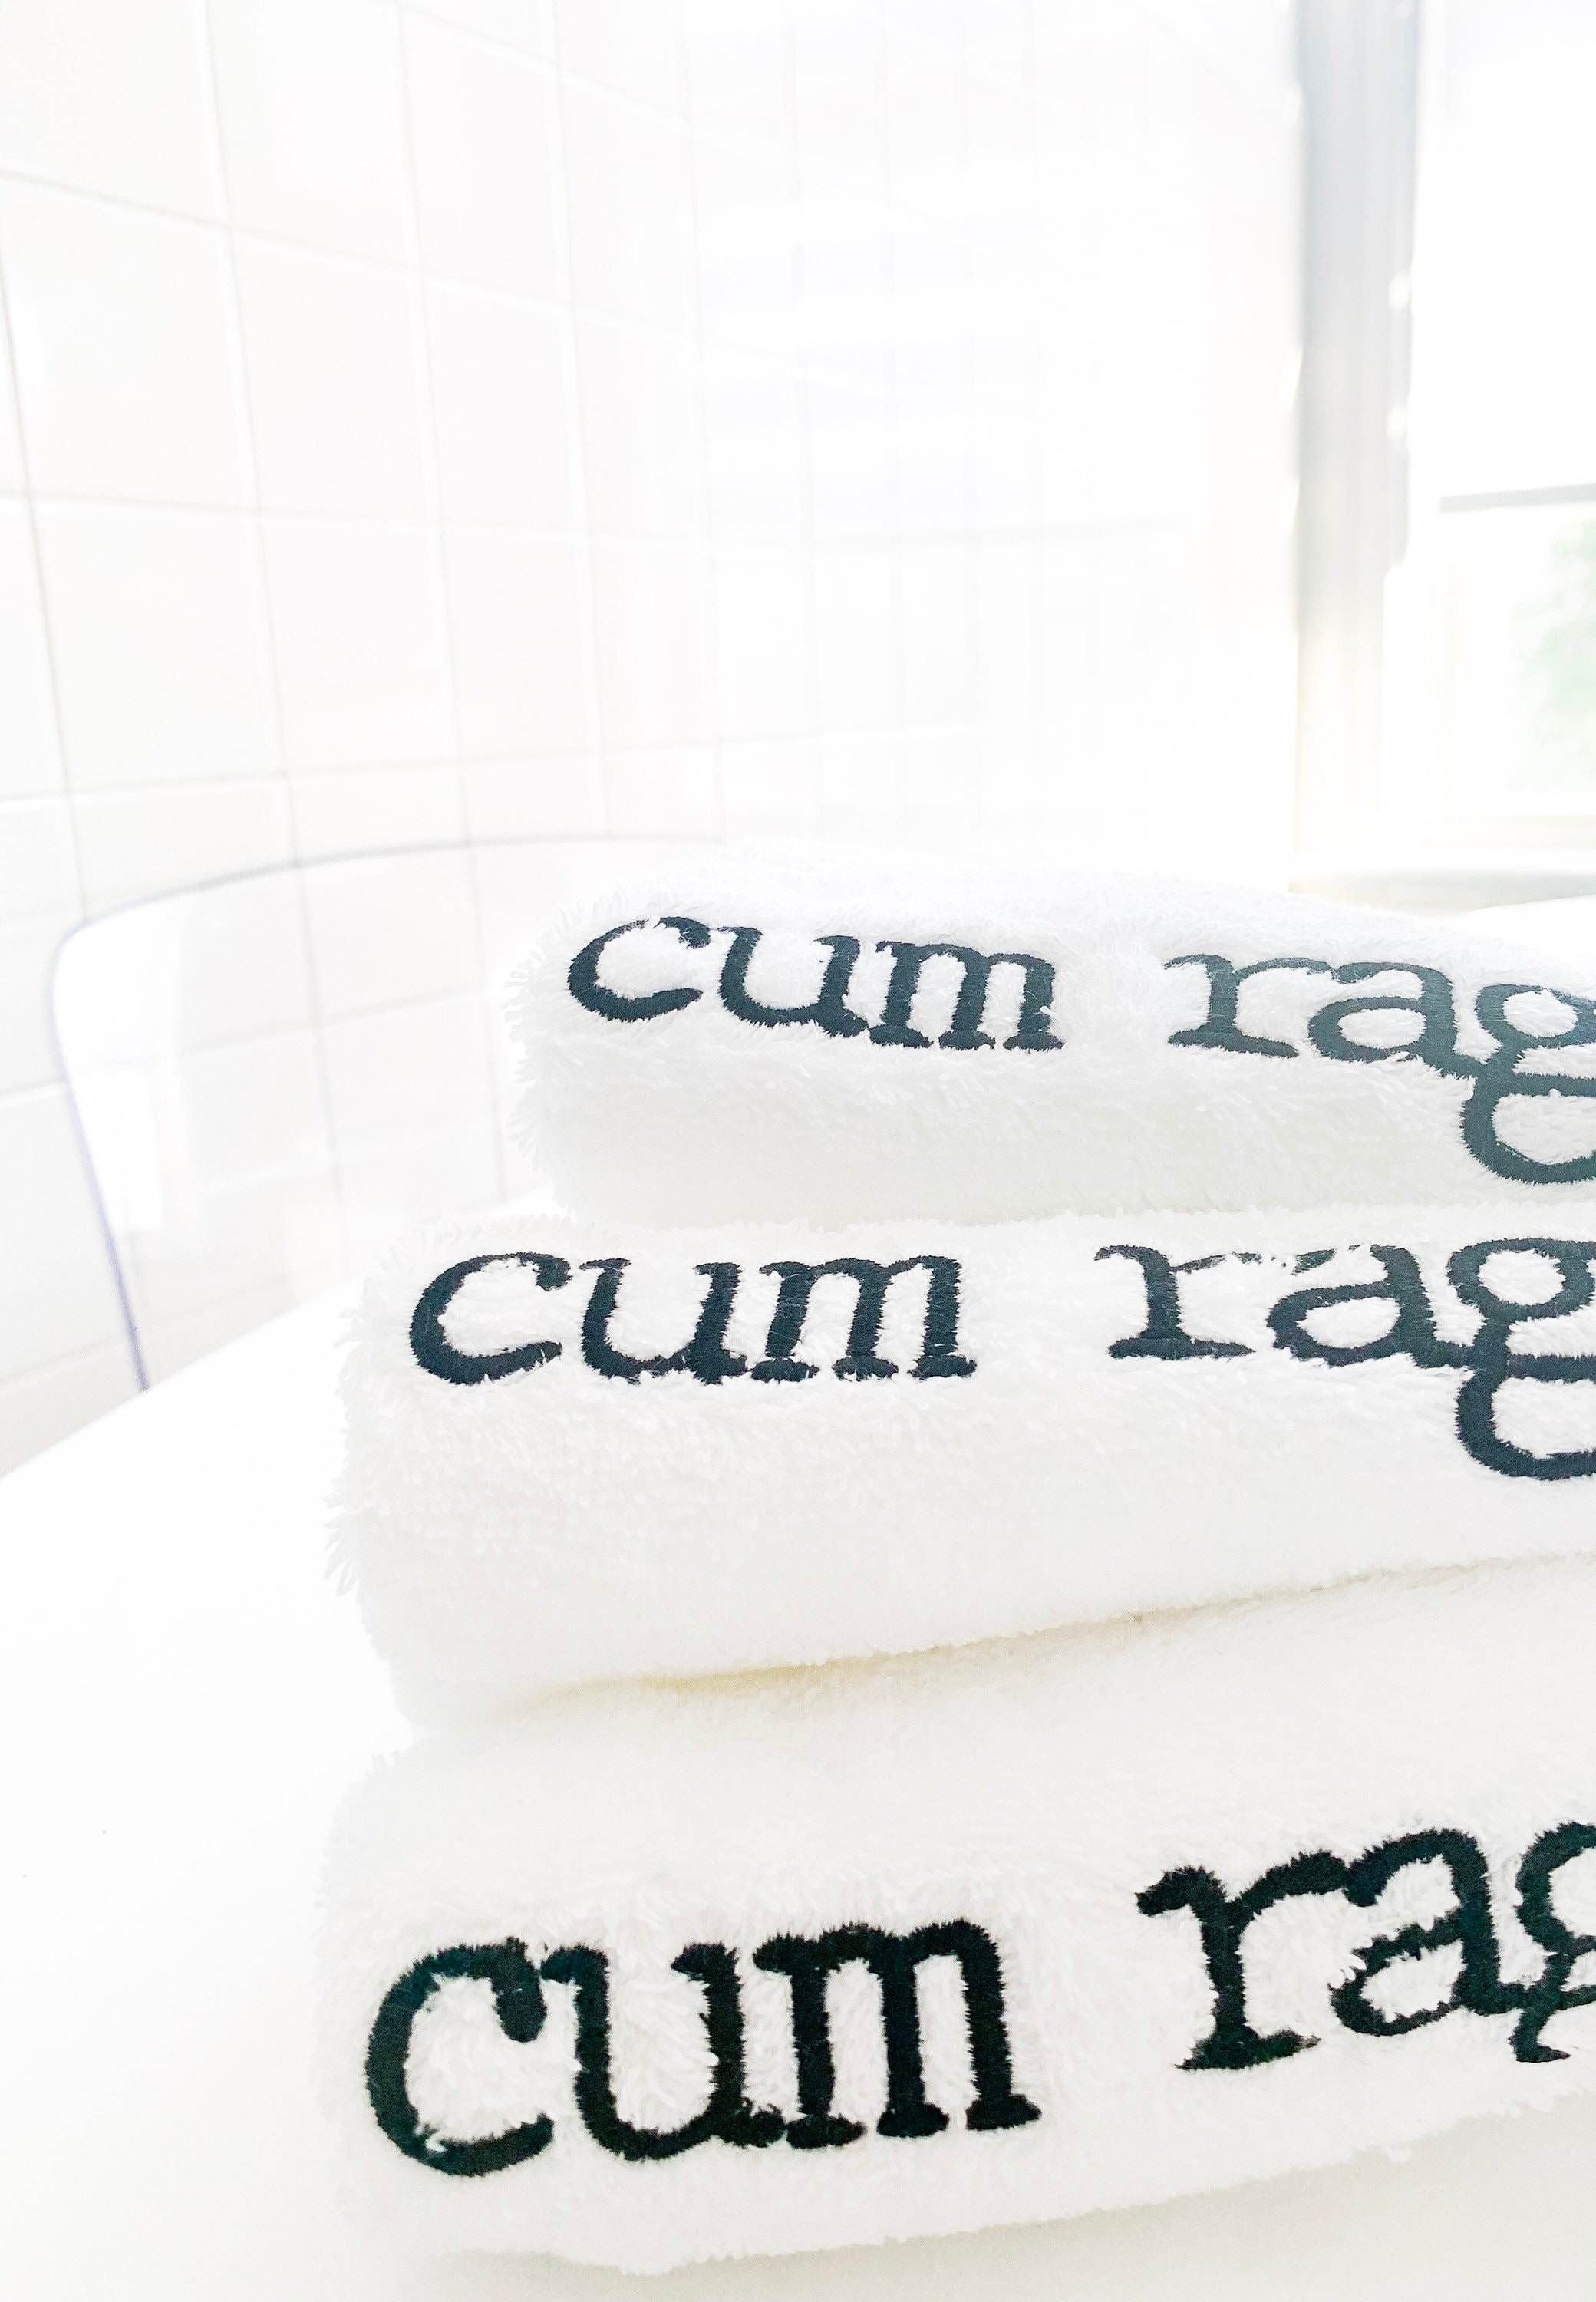 Personalized Cum Rag Trio – Maureen's Custom Boutique